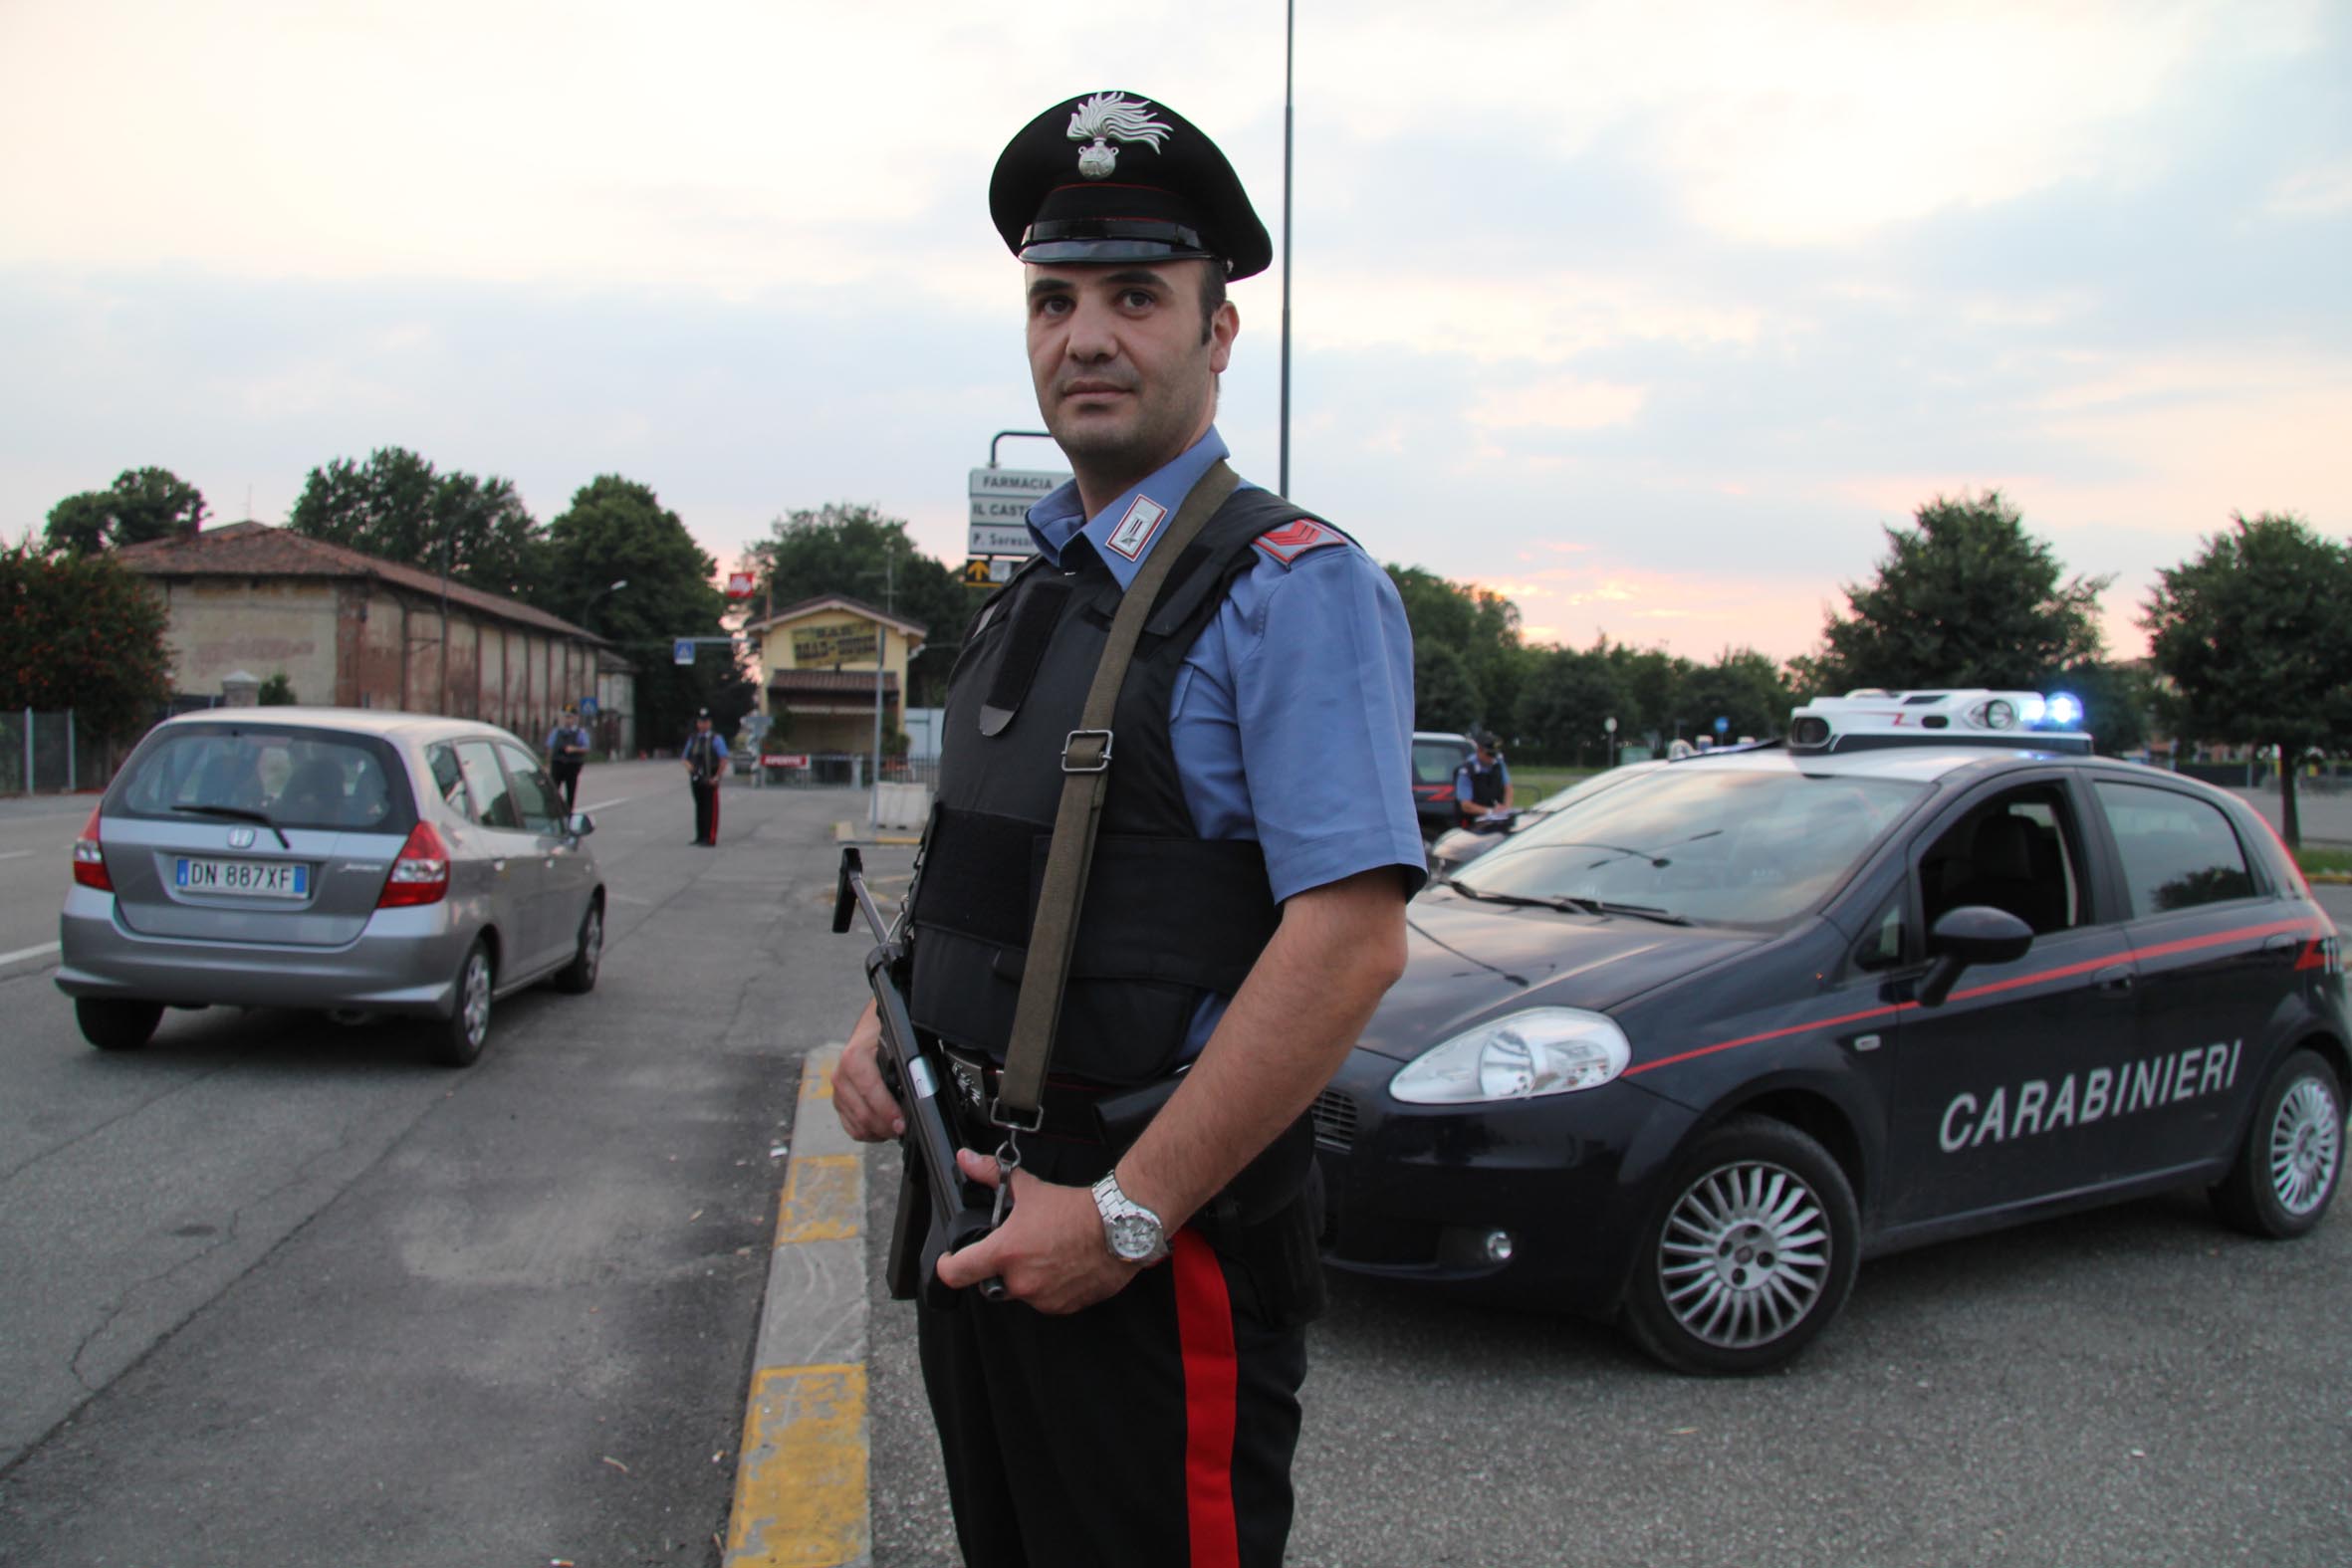  Controlli dei carabinieri nella Penisola Sorrentina: 3 denunciati